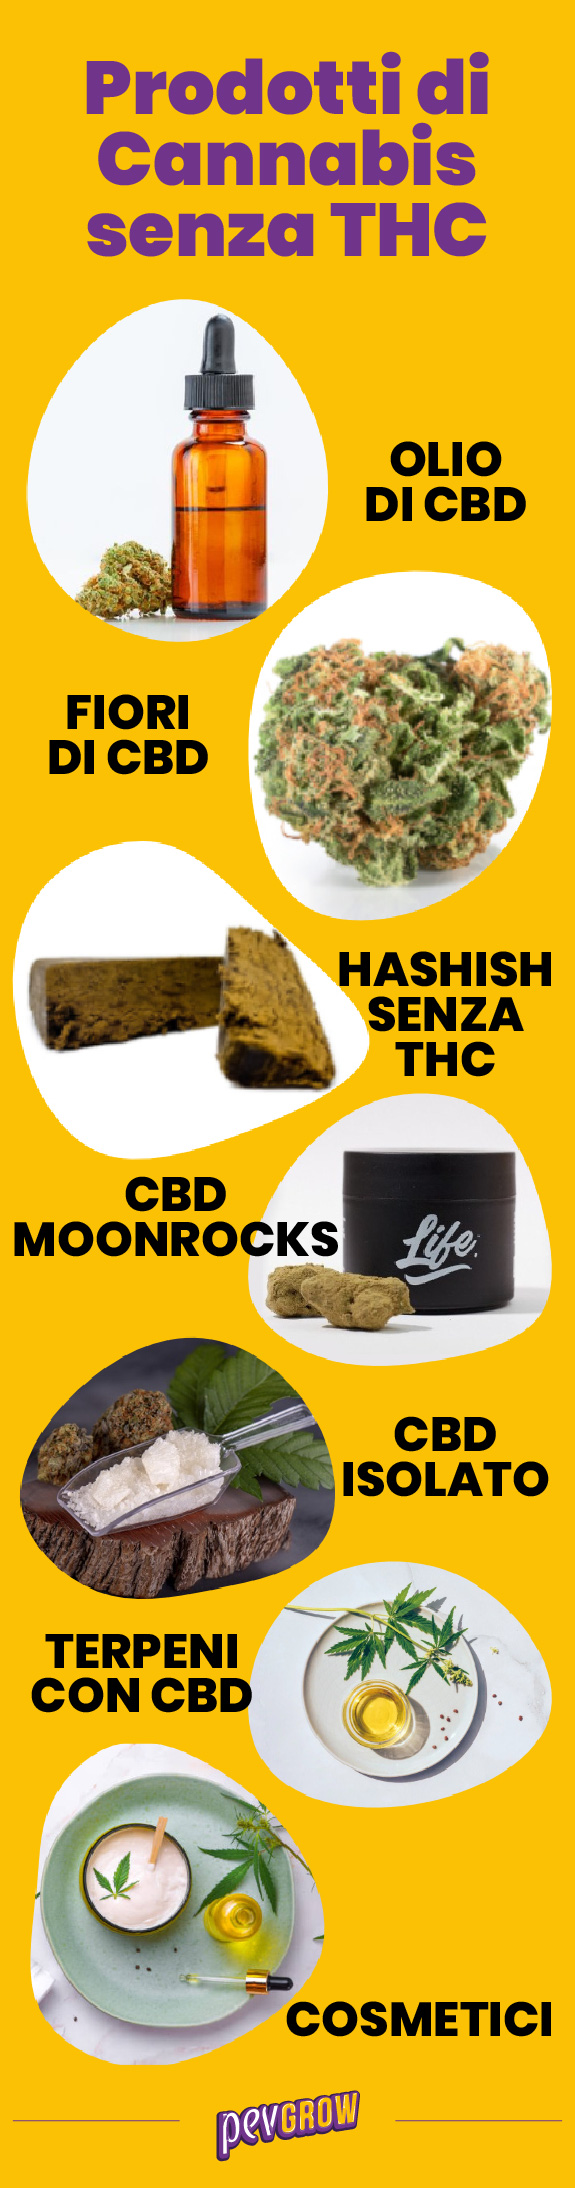 Elenco dei prodotti a base di cannabis senza THC